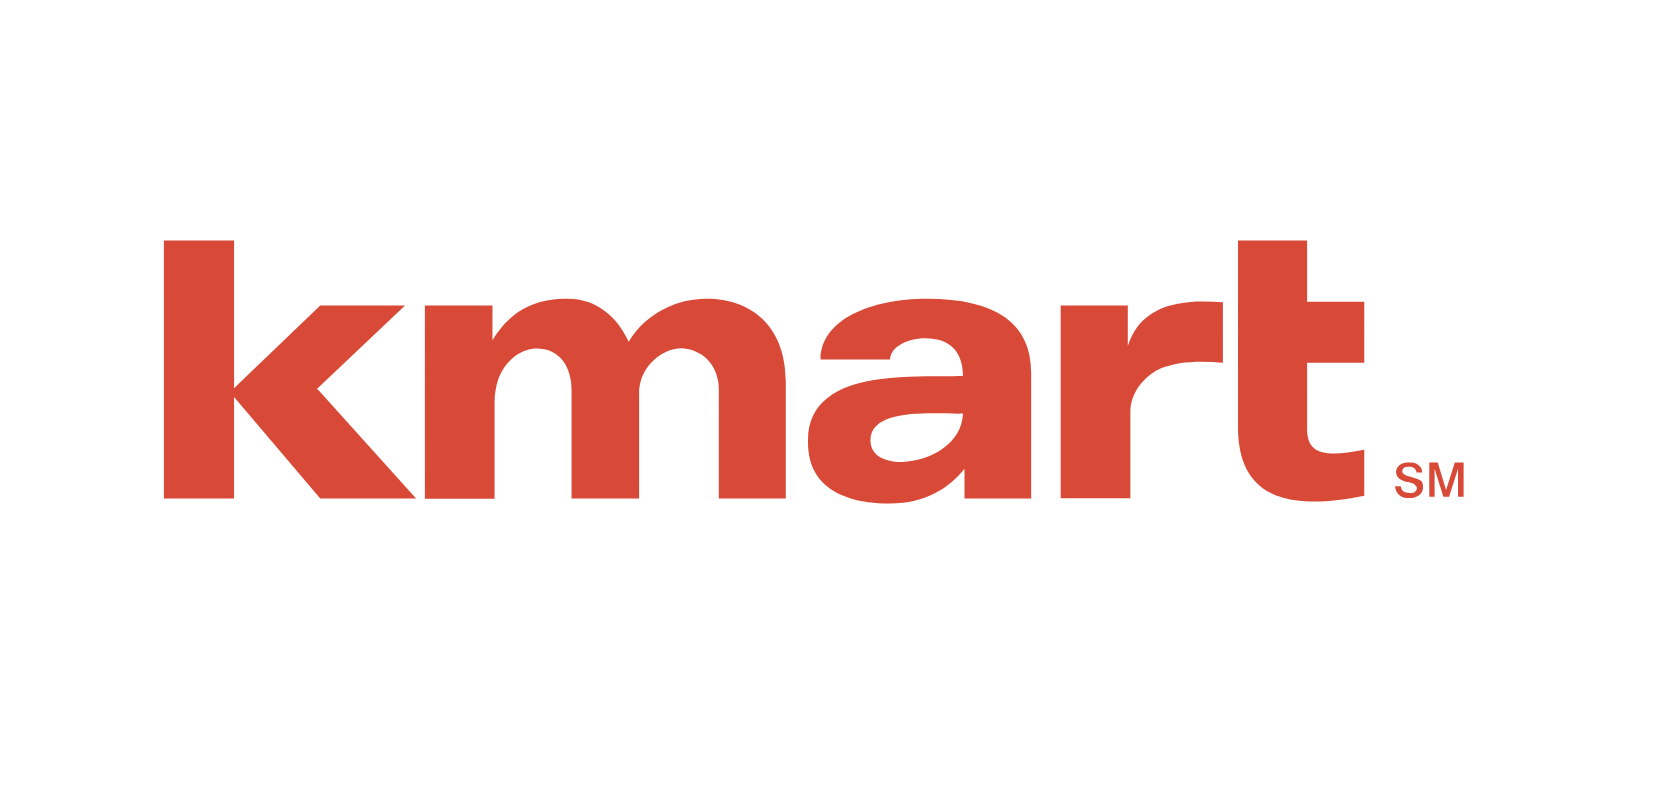 Old Kmart Logo - Hardware store slated for former Kmart - BoiseDev